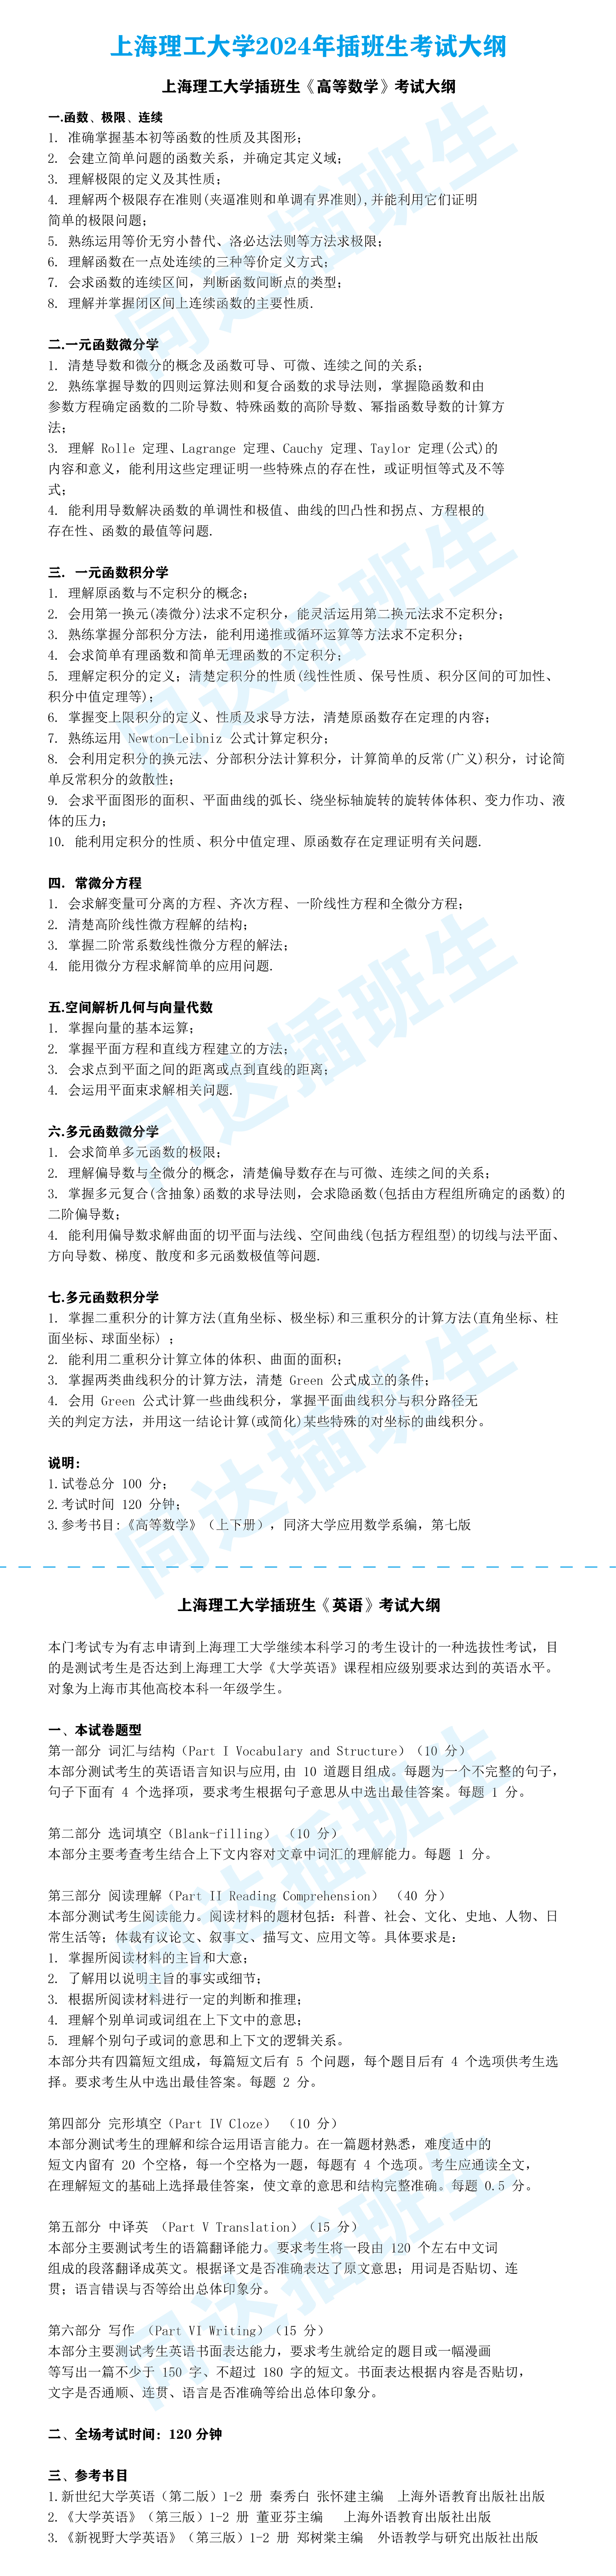 24年上海理工大学考试大纲_画板 1.jpg